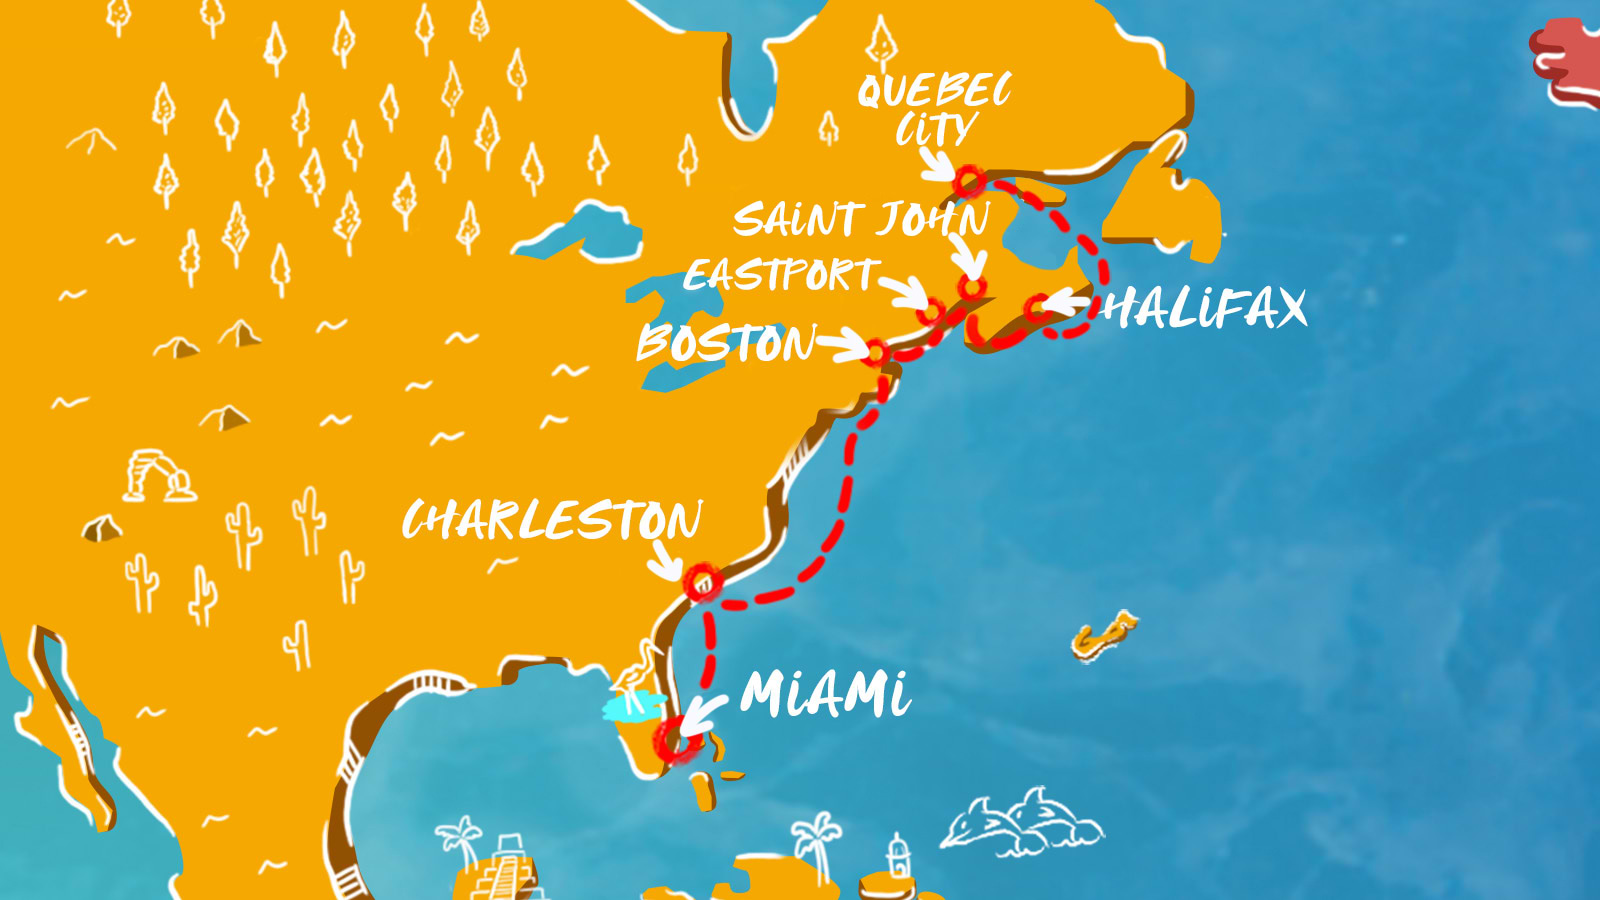 Map of Canada, Carolina, & Miami itinerary